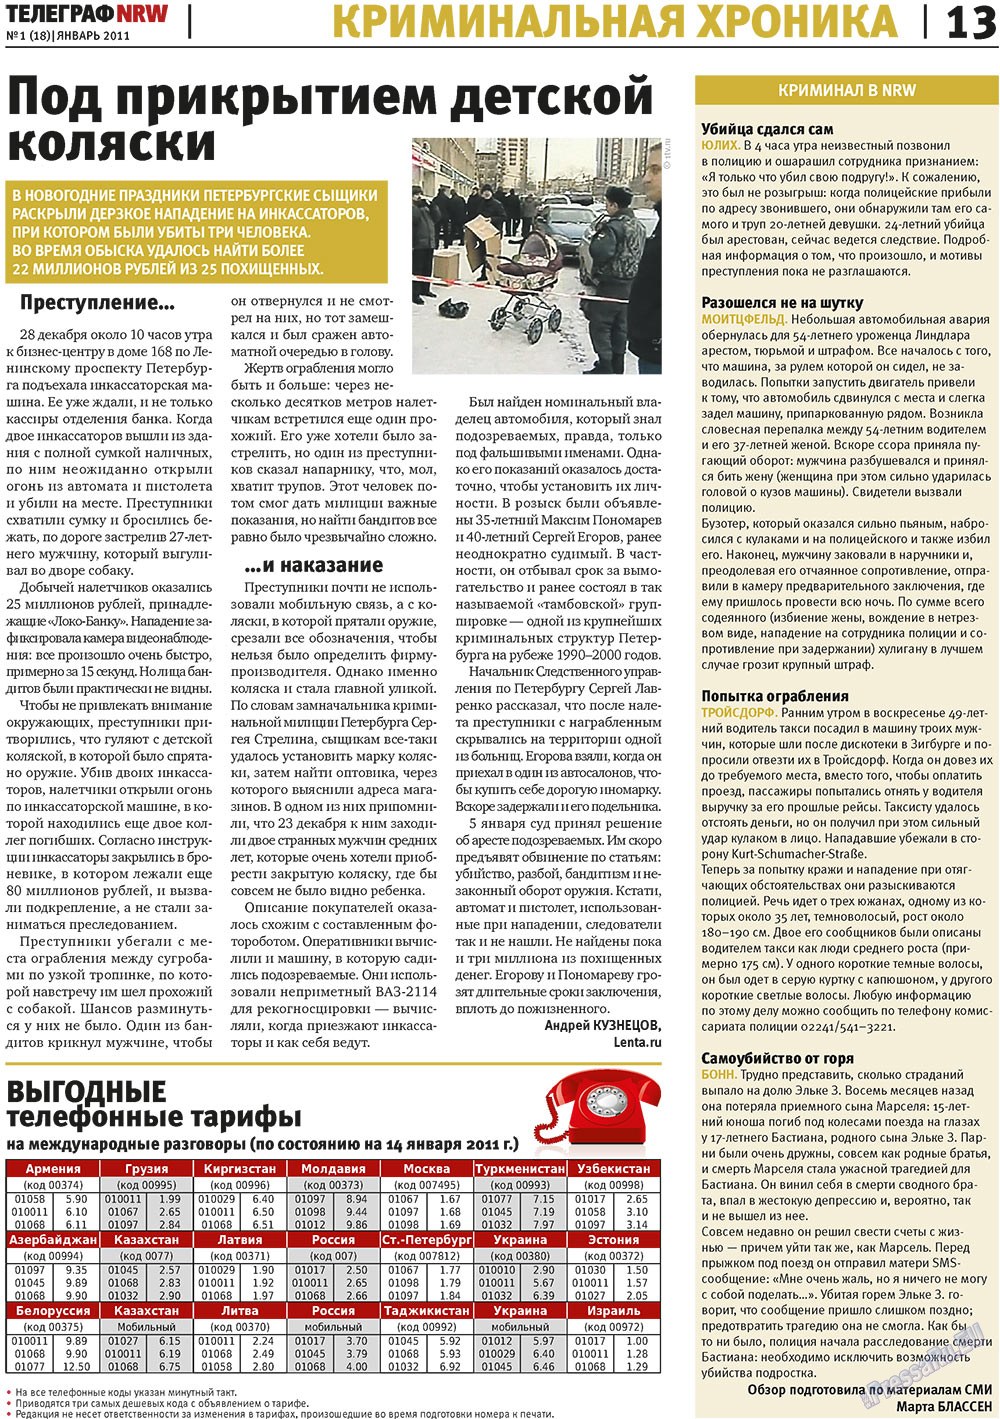 Телеграф NRW (газета). 2011 год, номер 1, стр. 13